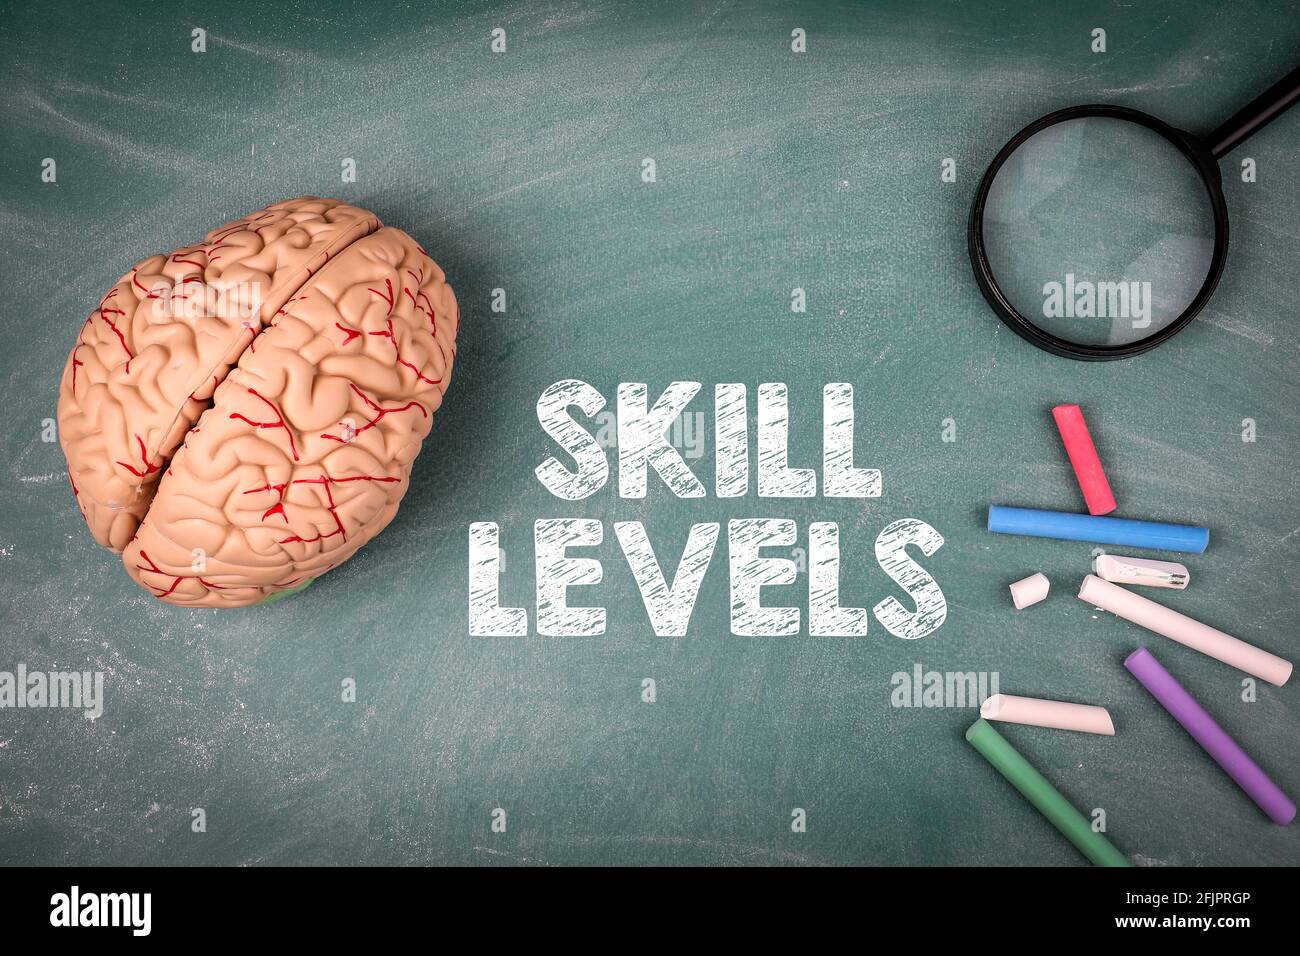 Concetto dei livelli di abilità. Modello cerebrale, lente di ingrandimento e calici colorati su una tavola di gesso verde. Foto Stock